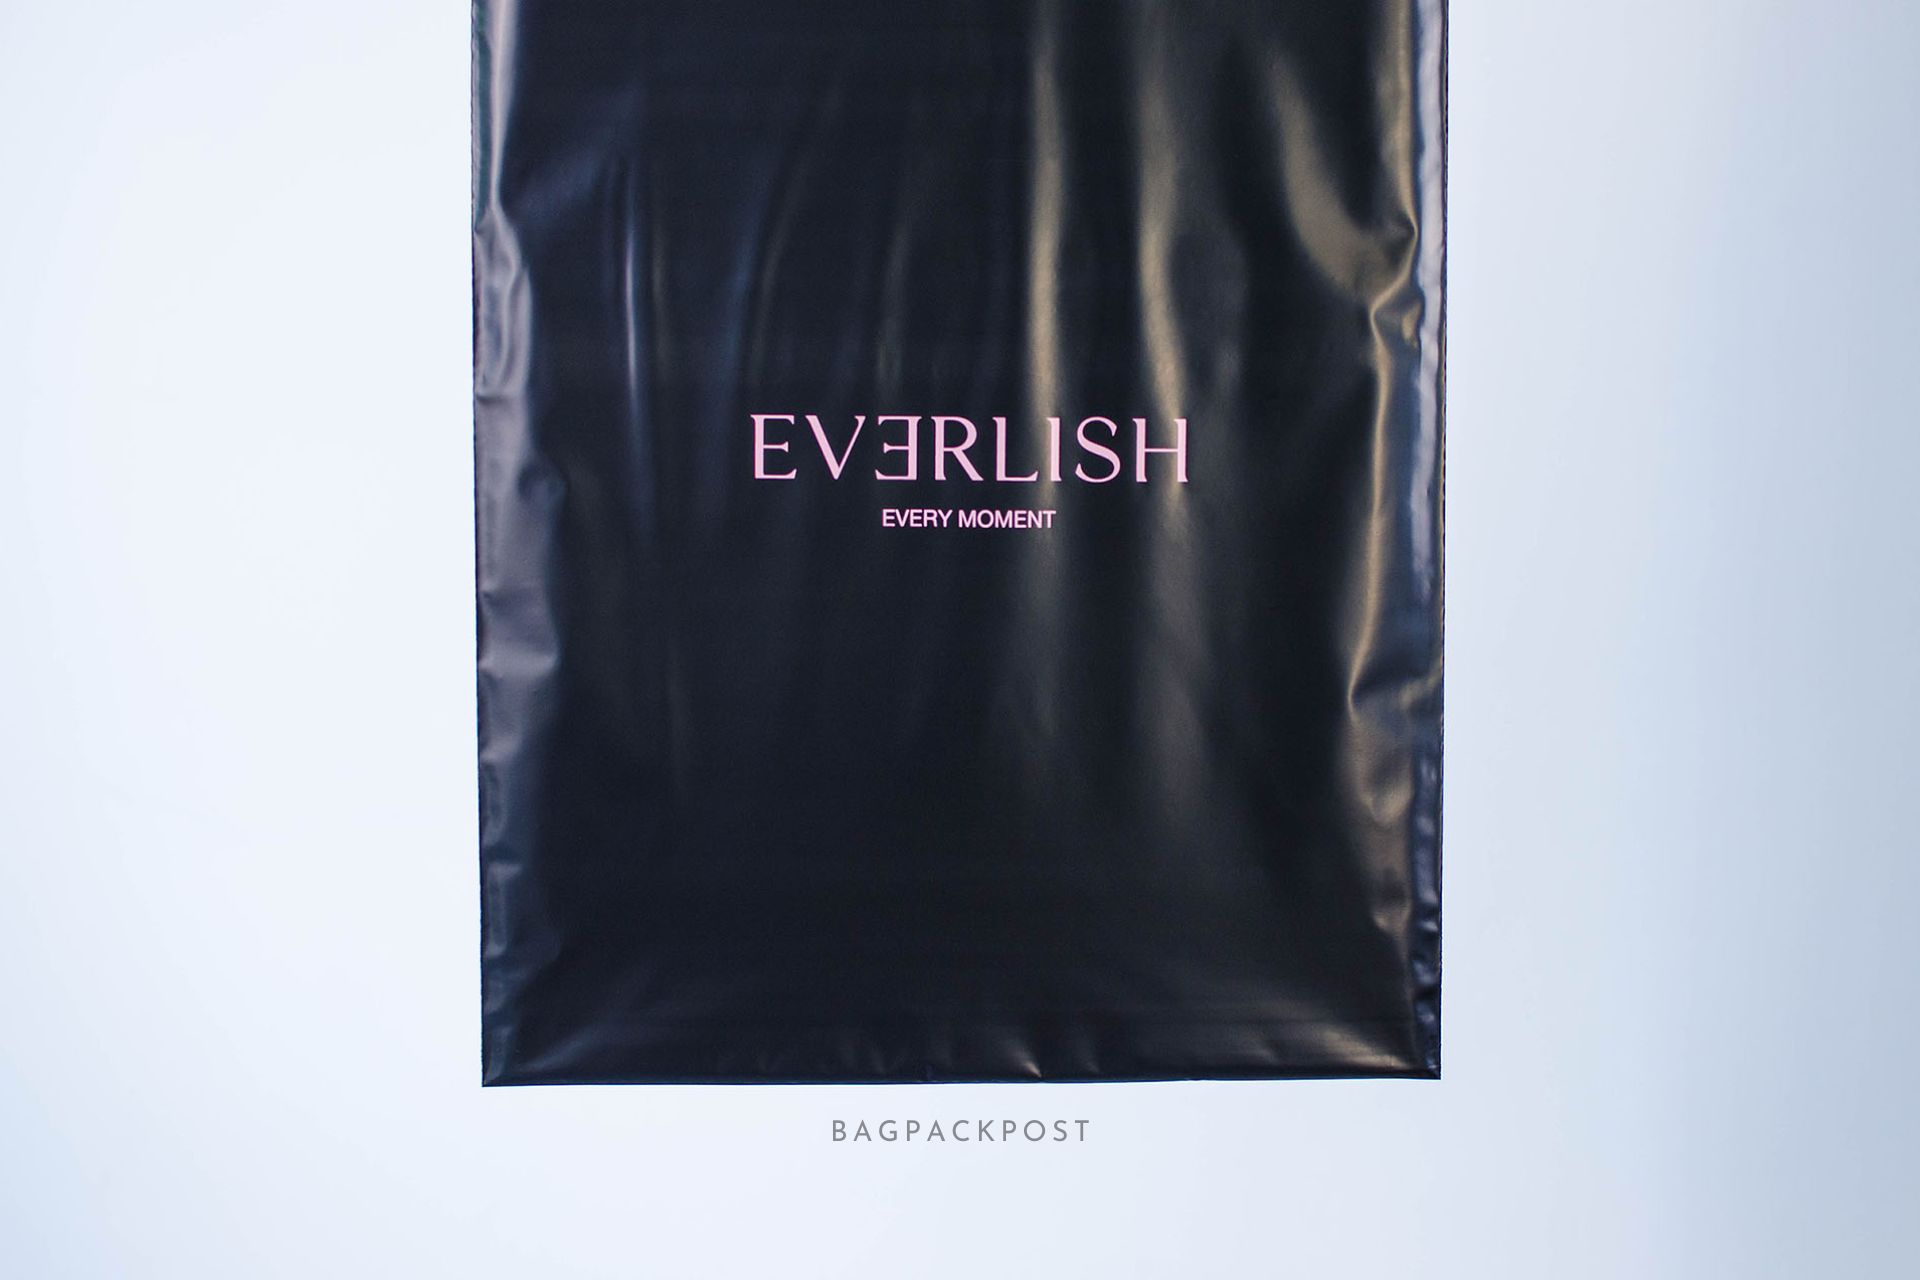 ผลิตถุงไปรษณีย์ ซองไปรษณีย์พิมพ์ลาย EVERLISH ซองไปรษณีย์สีดำ ถุงไปรษณีย์พิมพ์ลาย 3 BagPackPost